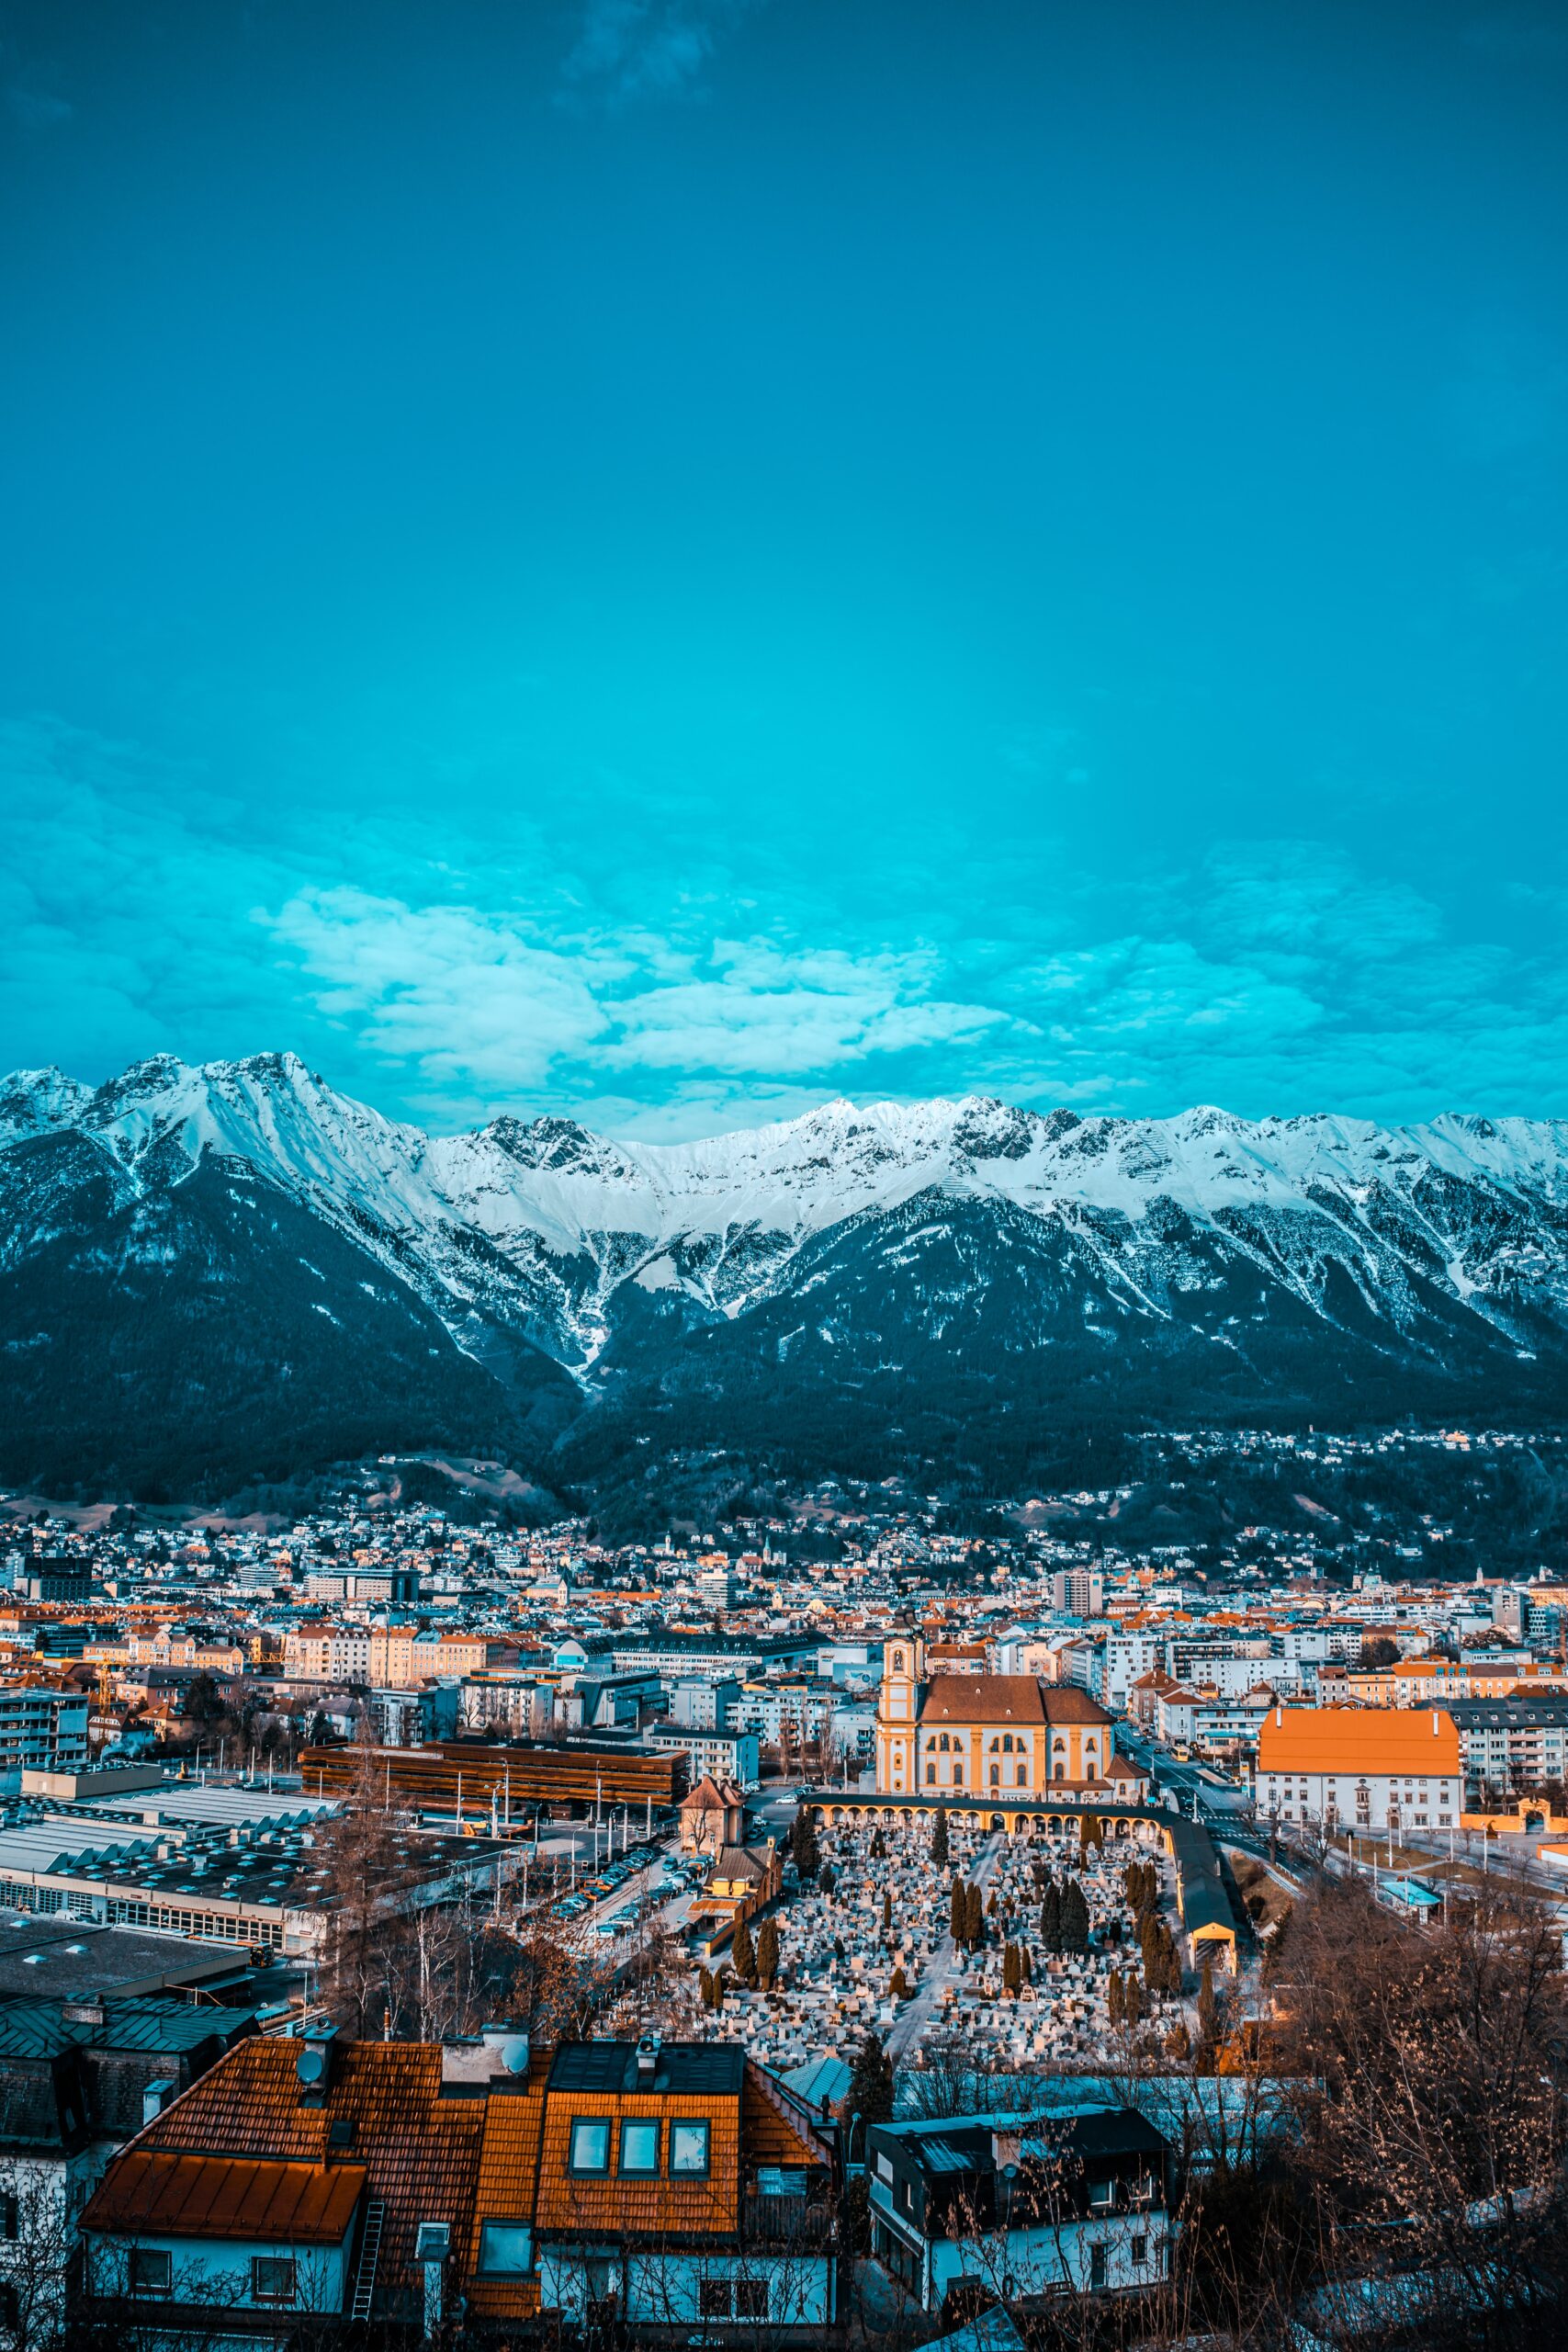 Innsbruck: Kota Cantik di Pegunungan Alpen yang Wajib Dikunjungi